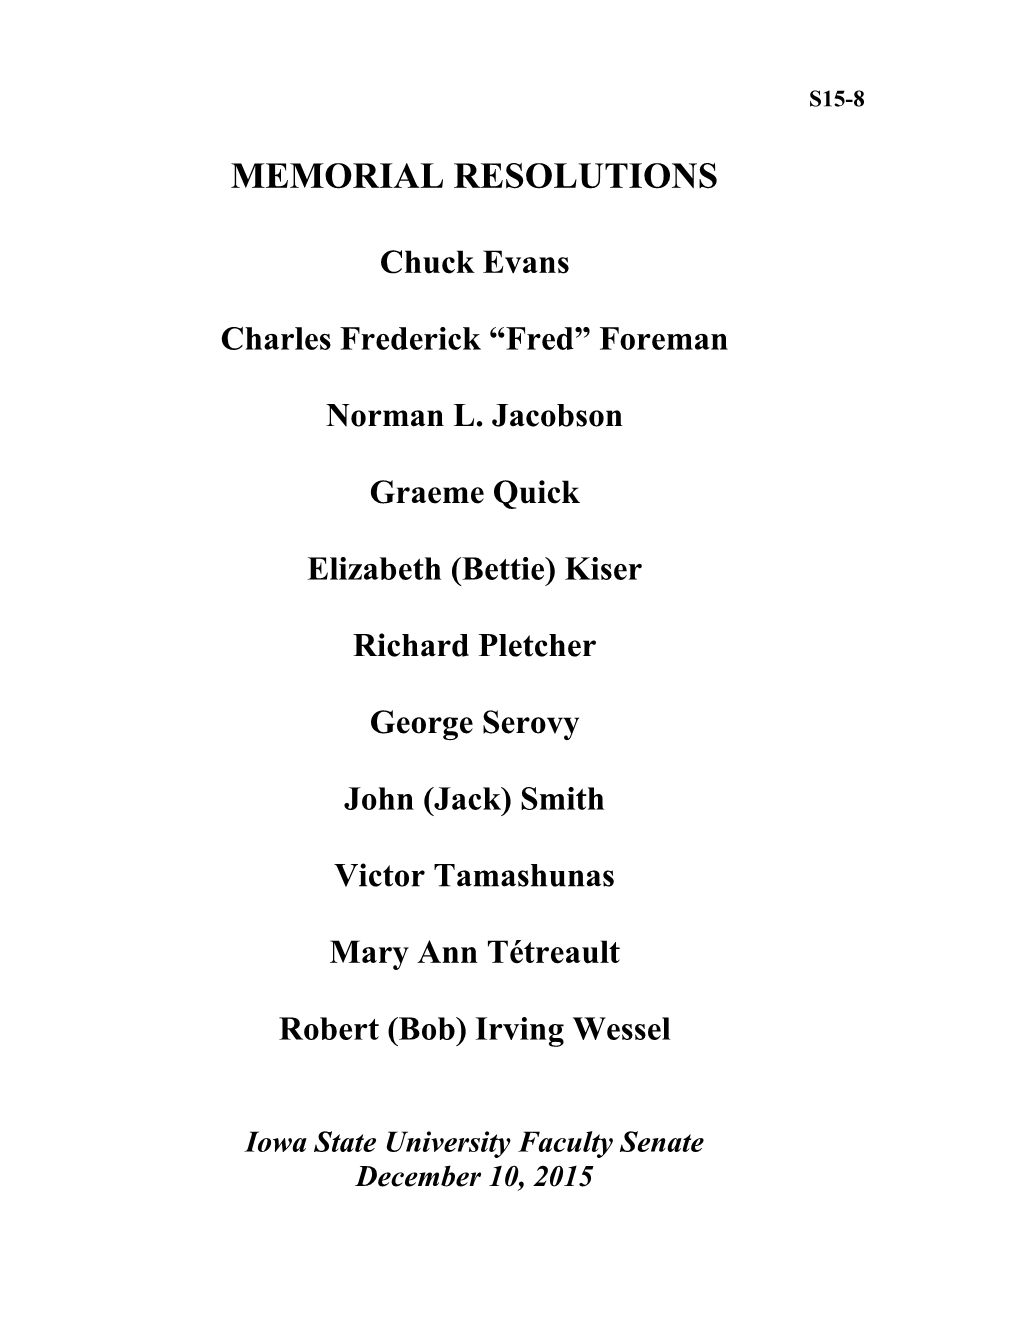 Memorial Resolutions